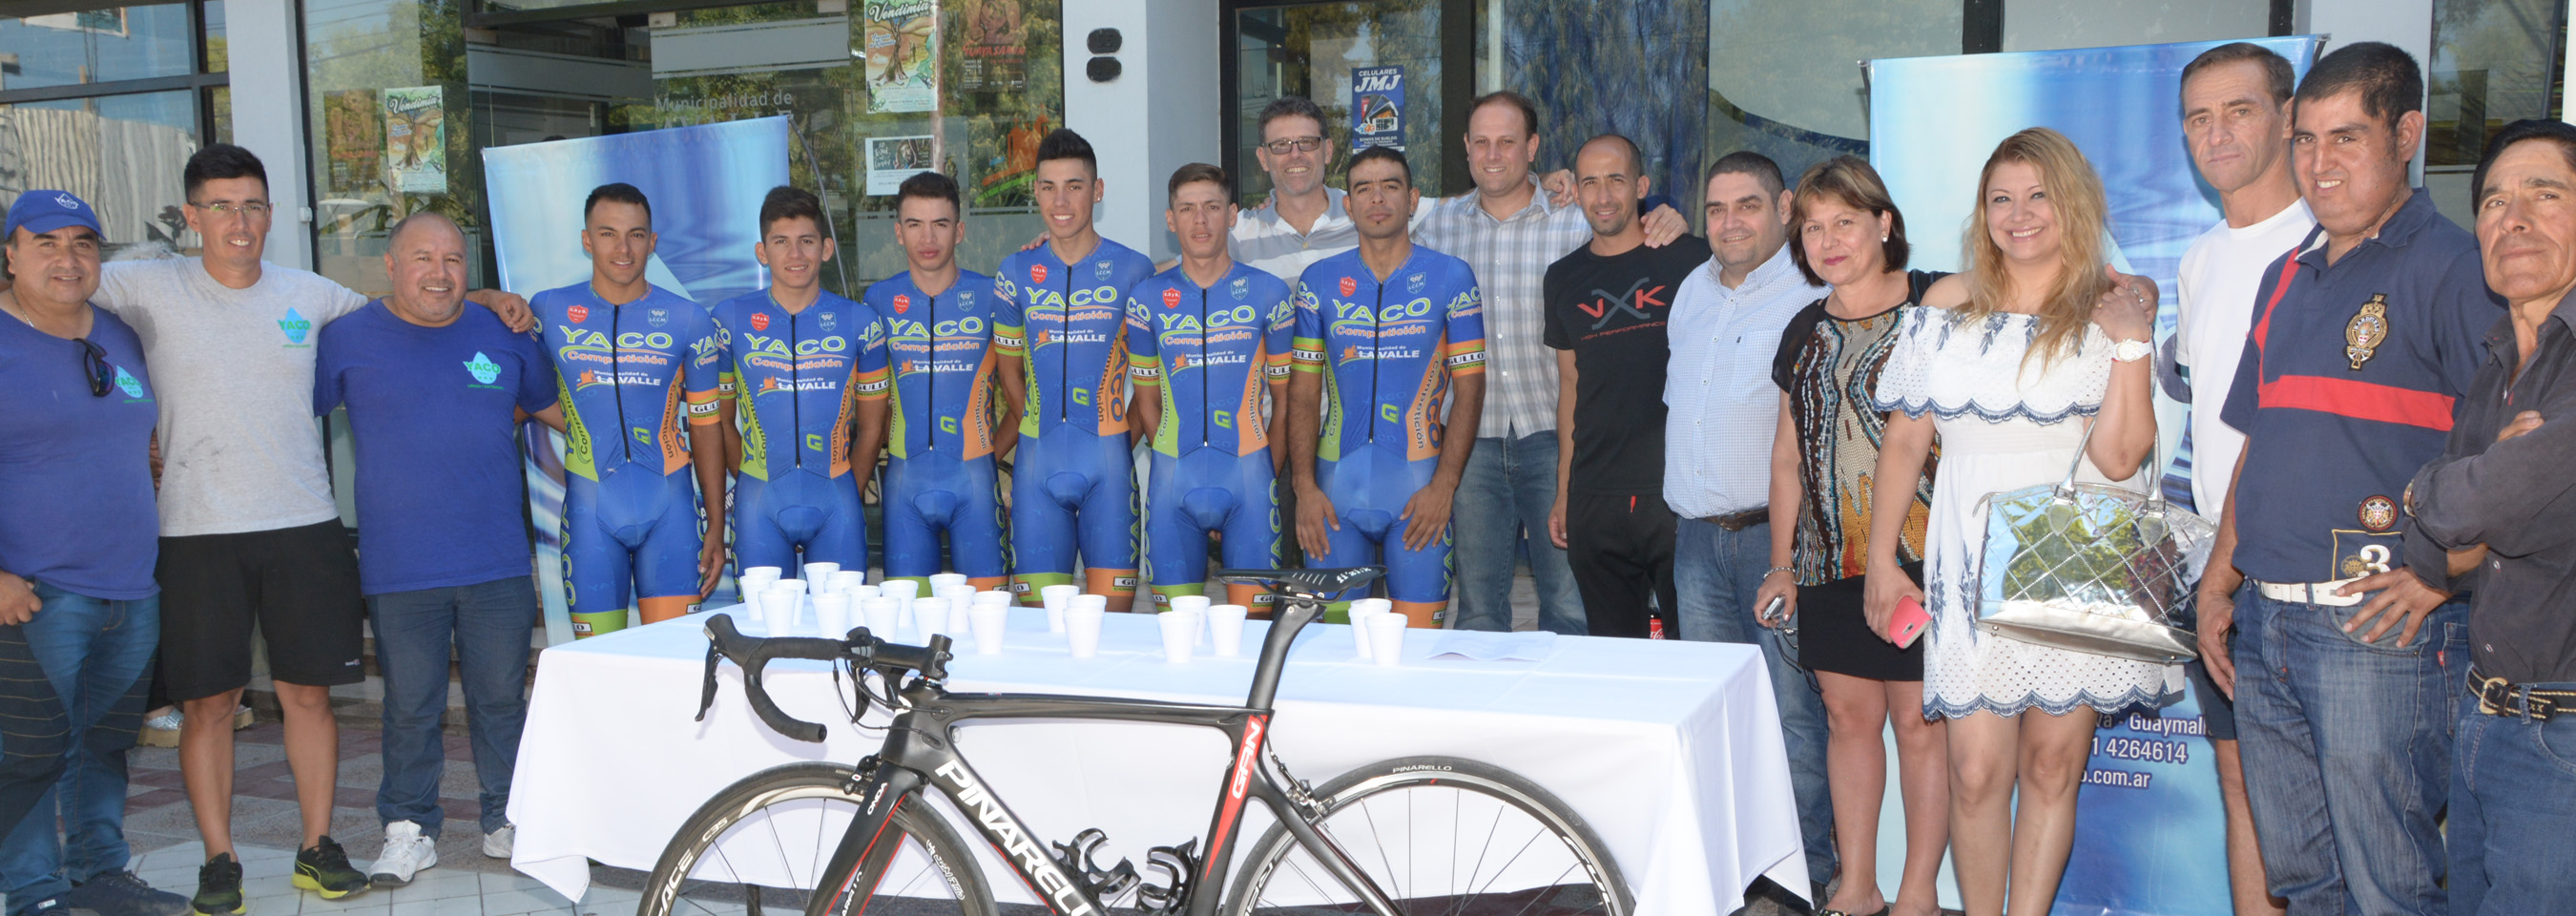 Lavalle con equipo propio en la vuelta ciclística de Mendoza